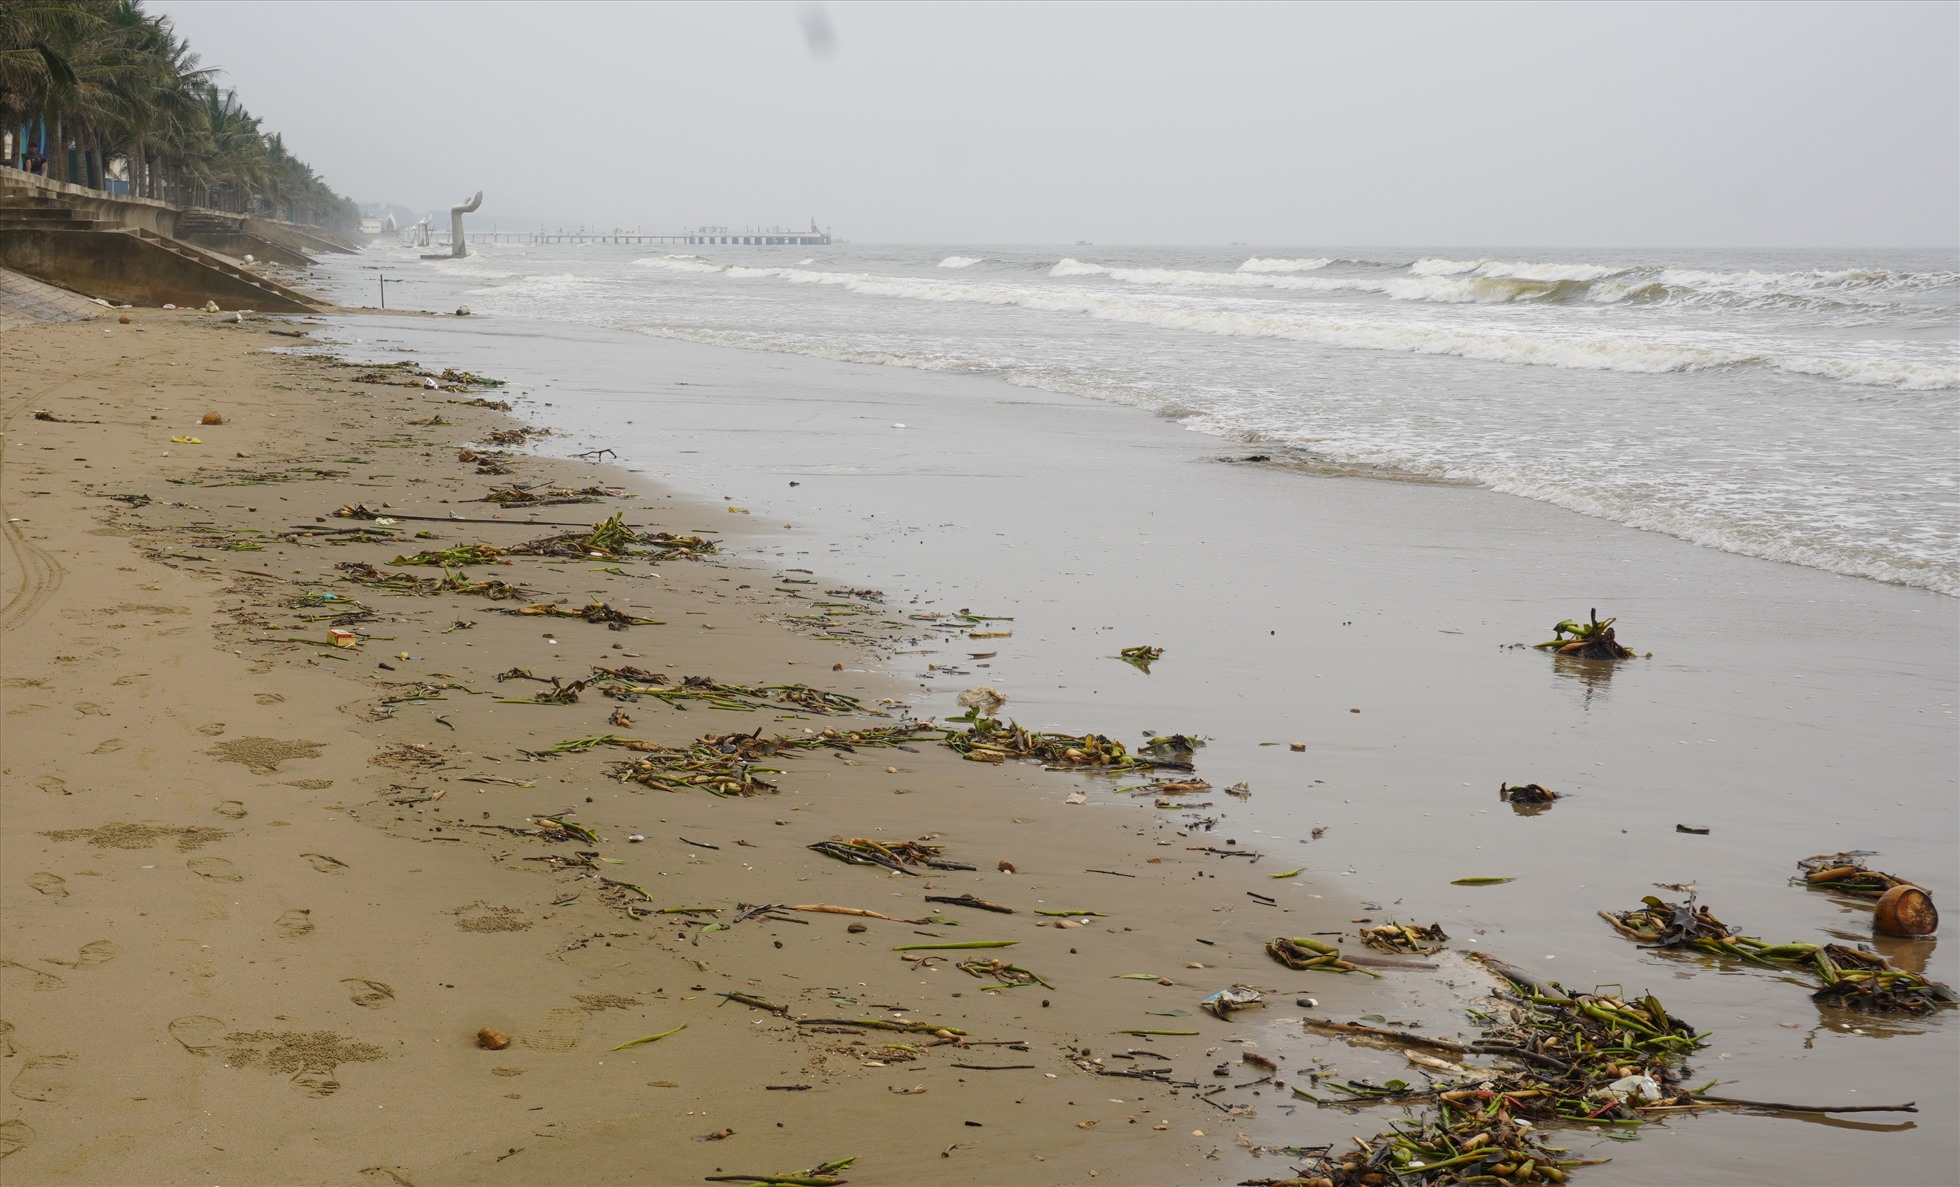 Anh Nguyễn Ngọc Quý (du khách đến từ Hà Nội) cho biết, anh cùng gia đình về biển Hải Tiến để nghỉ dưỡng vì nghĩ nước biển trong xanh, đẹp. Tuy nhiên khi đến đây thấy bãi biển đầy rác, nước đục và trông khá thất vọng. Ảnh: Quách Du